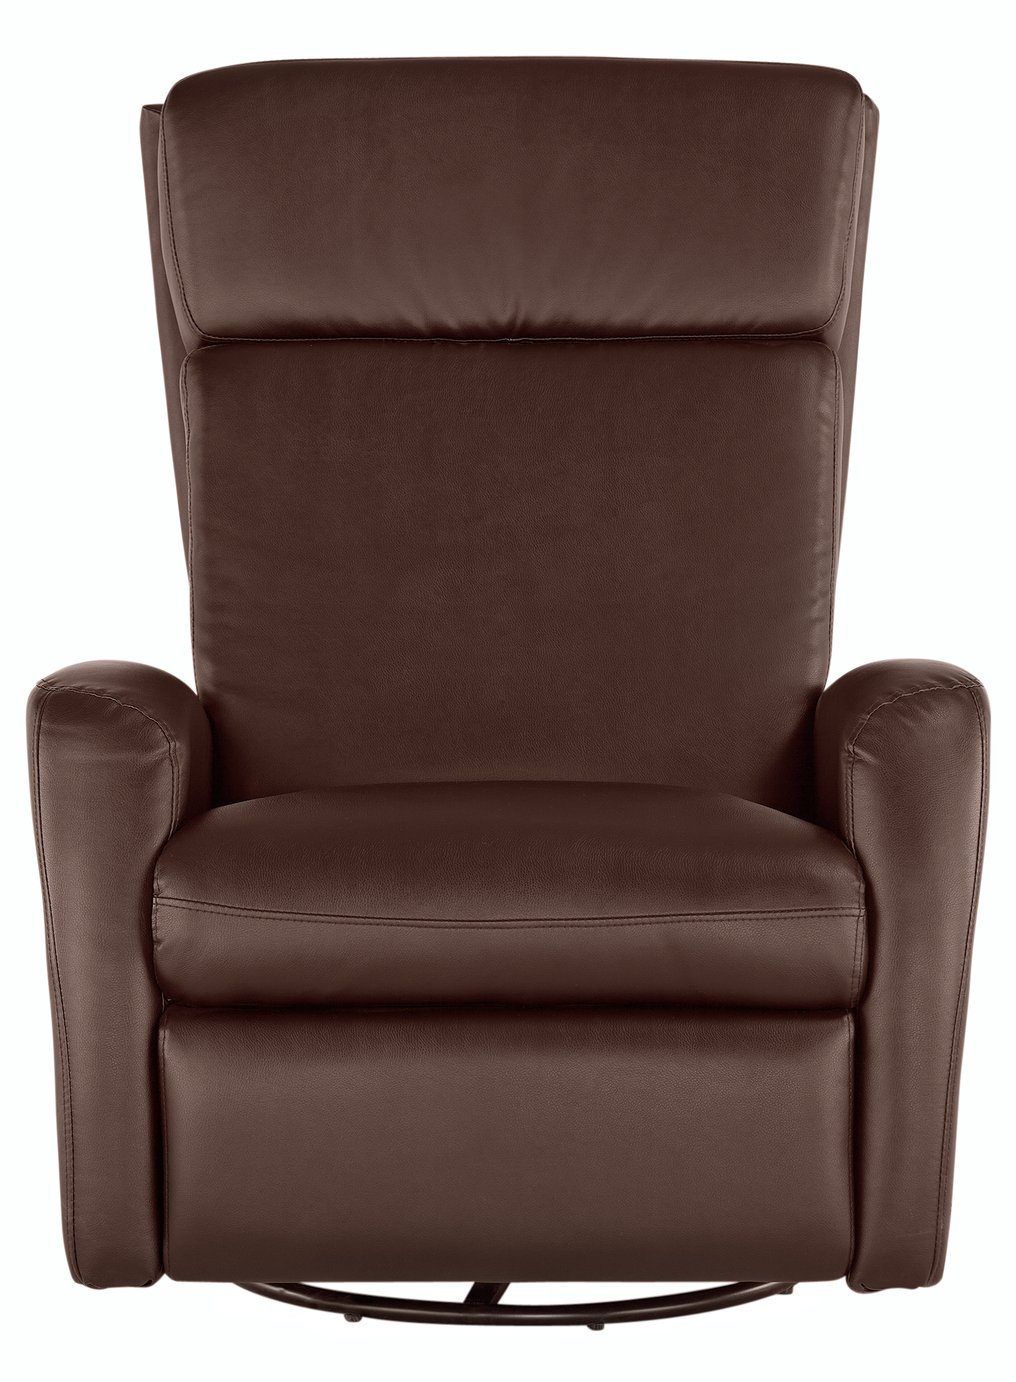 Argos Home Rock-R-Round Recliner Chair - Chocolate